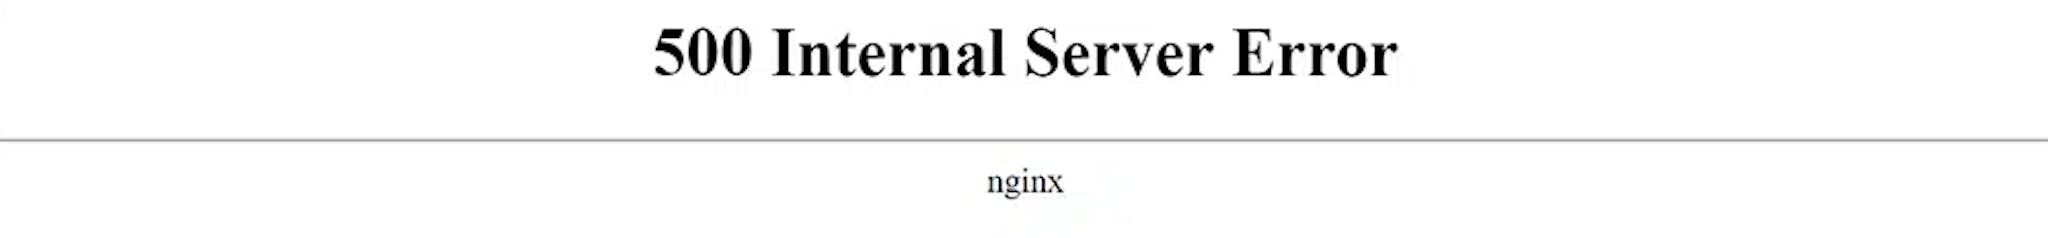 Error 400 was raised by nginx